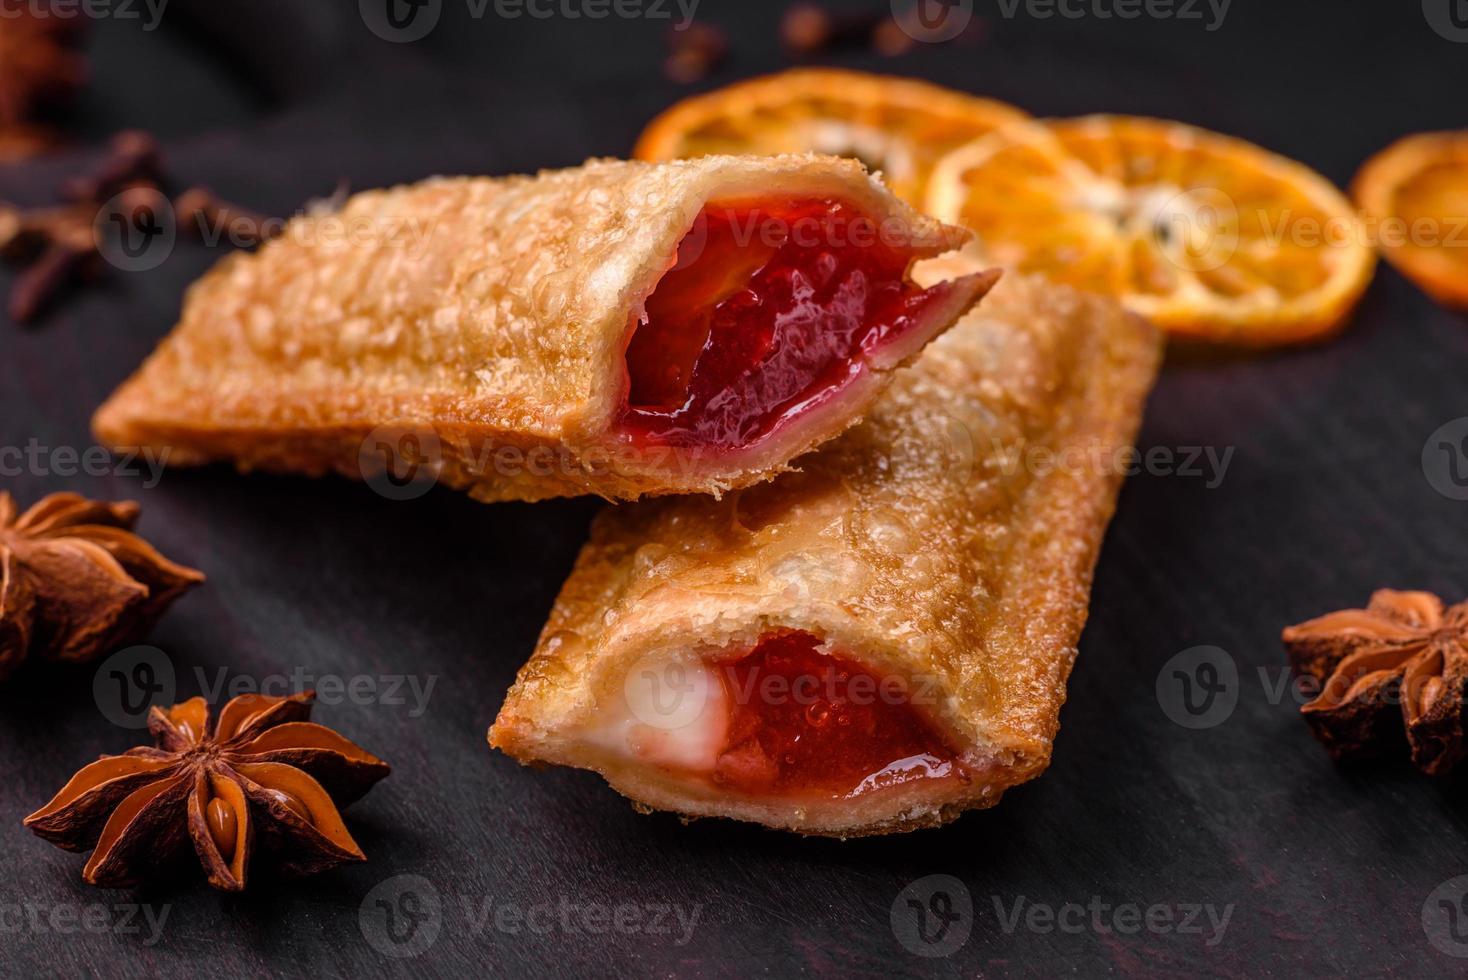 köstlich frisch knusprig Kuchen mit Kirsche Marmelade auf ein hölzern Schneiden Tafel foto